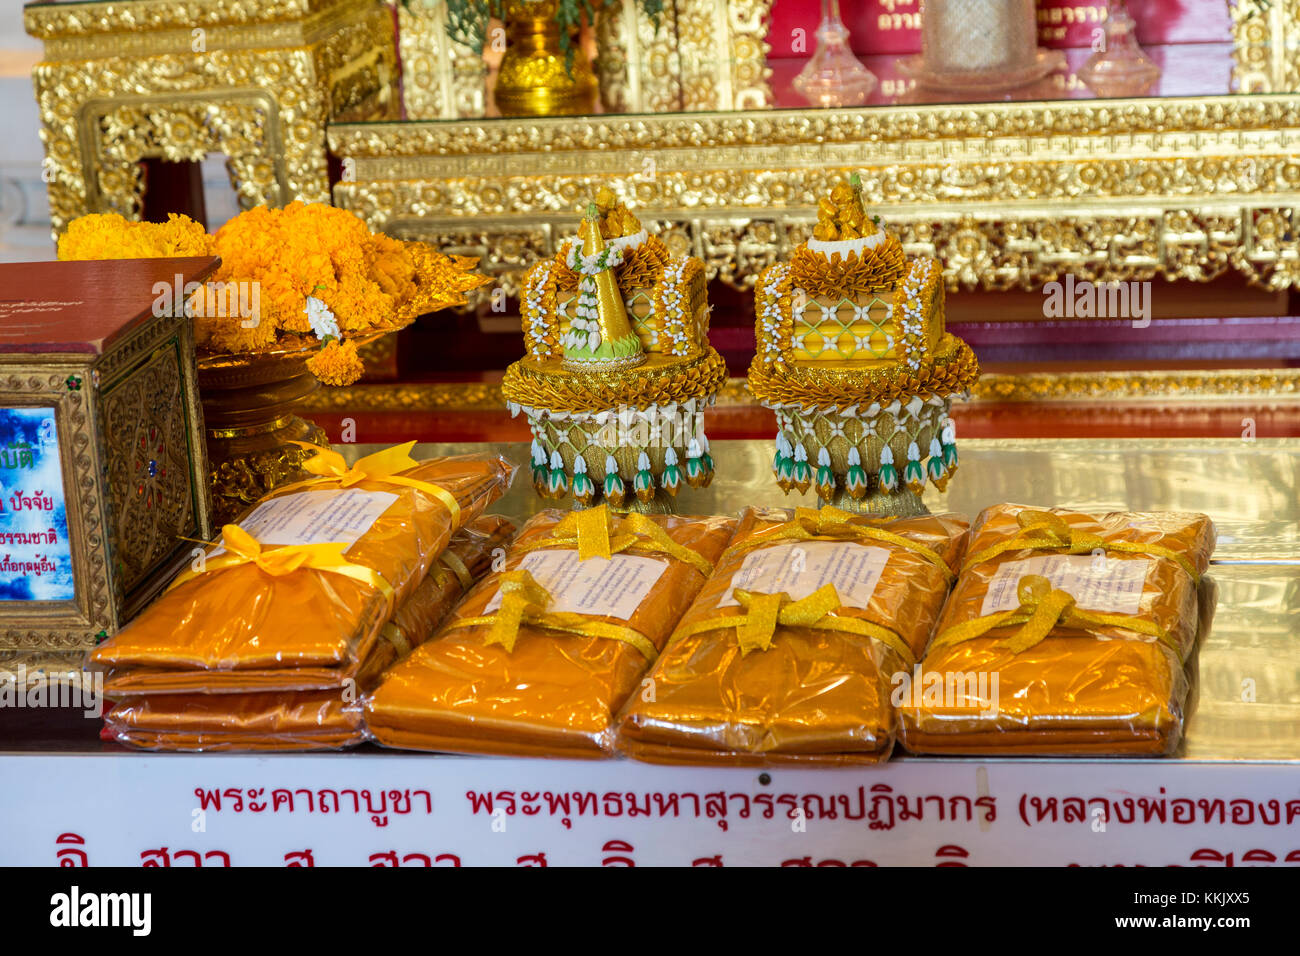 Bangkok, Tailandia. Wat Traimit, Tempio del Buddha d'oro. Offerte di panno arancione per uso come monaci' abbigliamento. Foto Stock